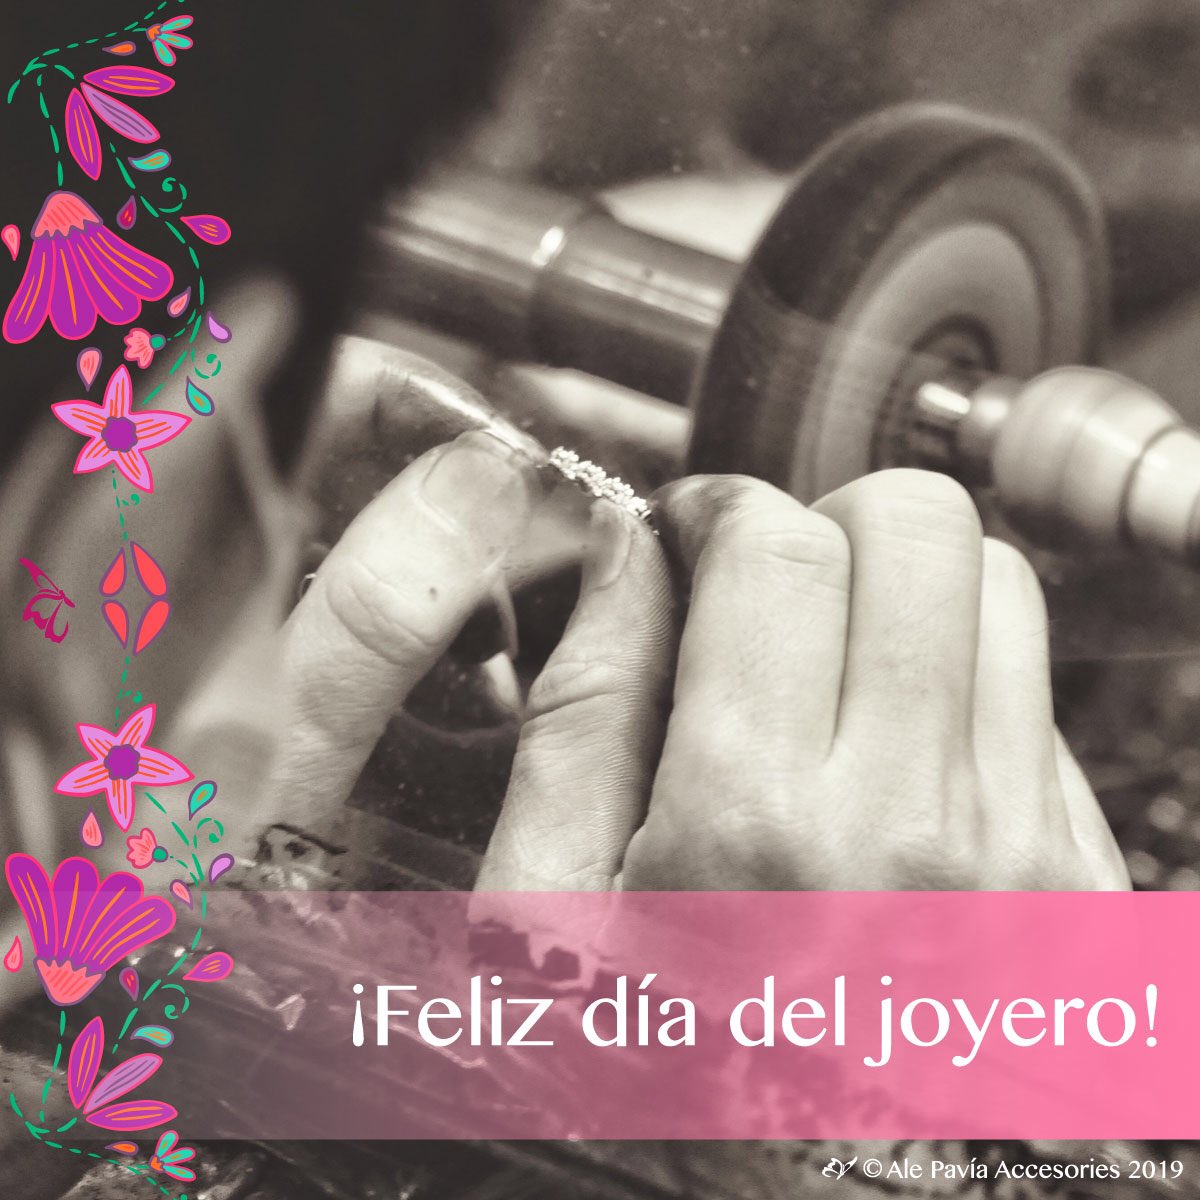 ¡Gracias a ellos, en Ale Pavía podemos ofrecerles la mejor calidad en las piezas de joyería que podrías encontrar!

¡Felicidades en su día!
#joyeria #hechoenmexico #hechoamano #joyero #platadeley #plata #plata950 #joyeriadeautor #alepavia